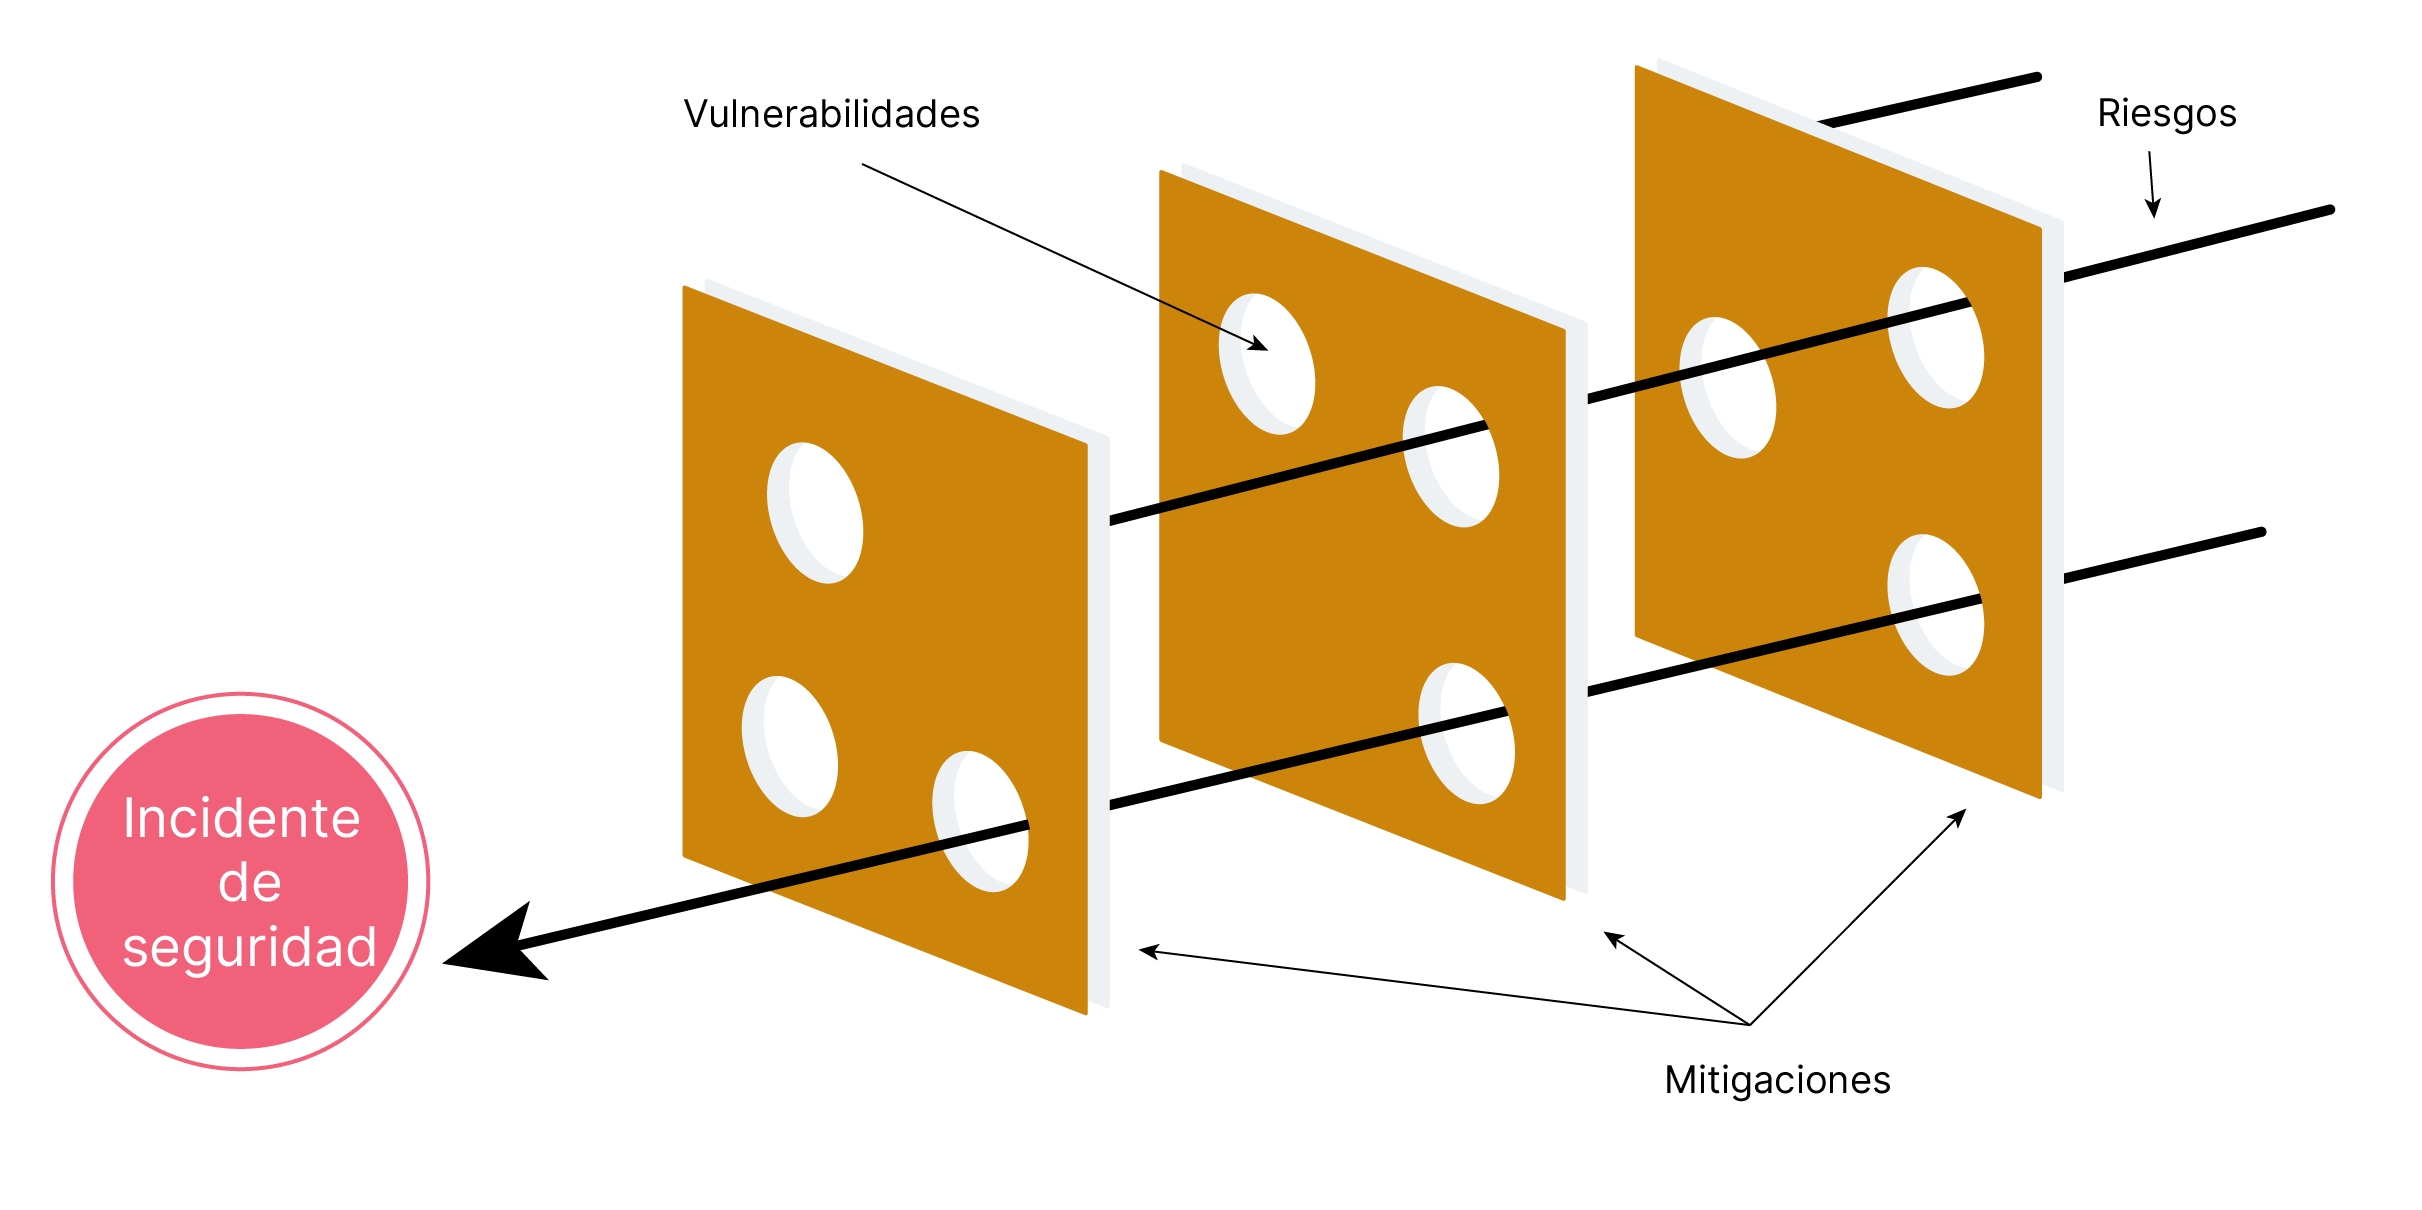 Gráfico que muestra tres rebanadas de queso suizo seguidas, lo que representa mitigaciones. Las flechas pasan a través de las rodajas para representar riesgos, y los agujeros en el queso representan vulnerabilidades que podrían conducir a un incidente de seguridad. 